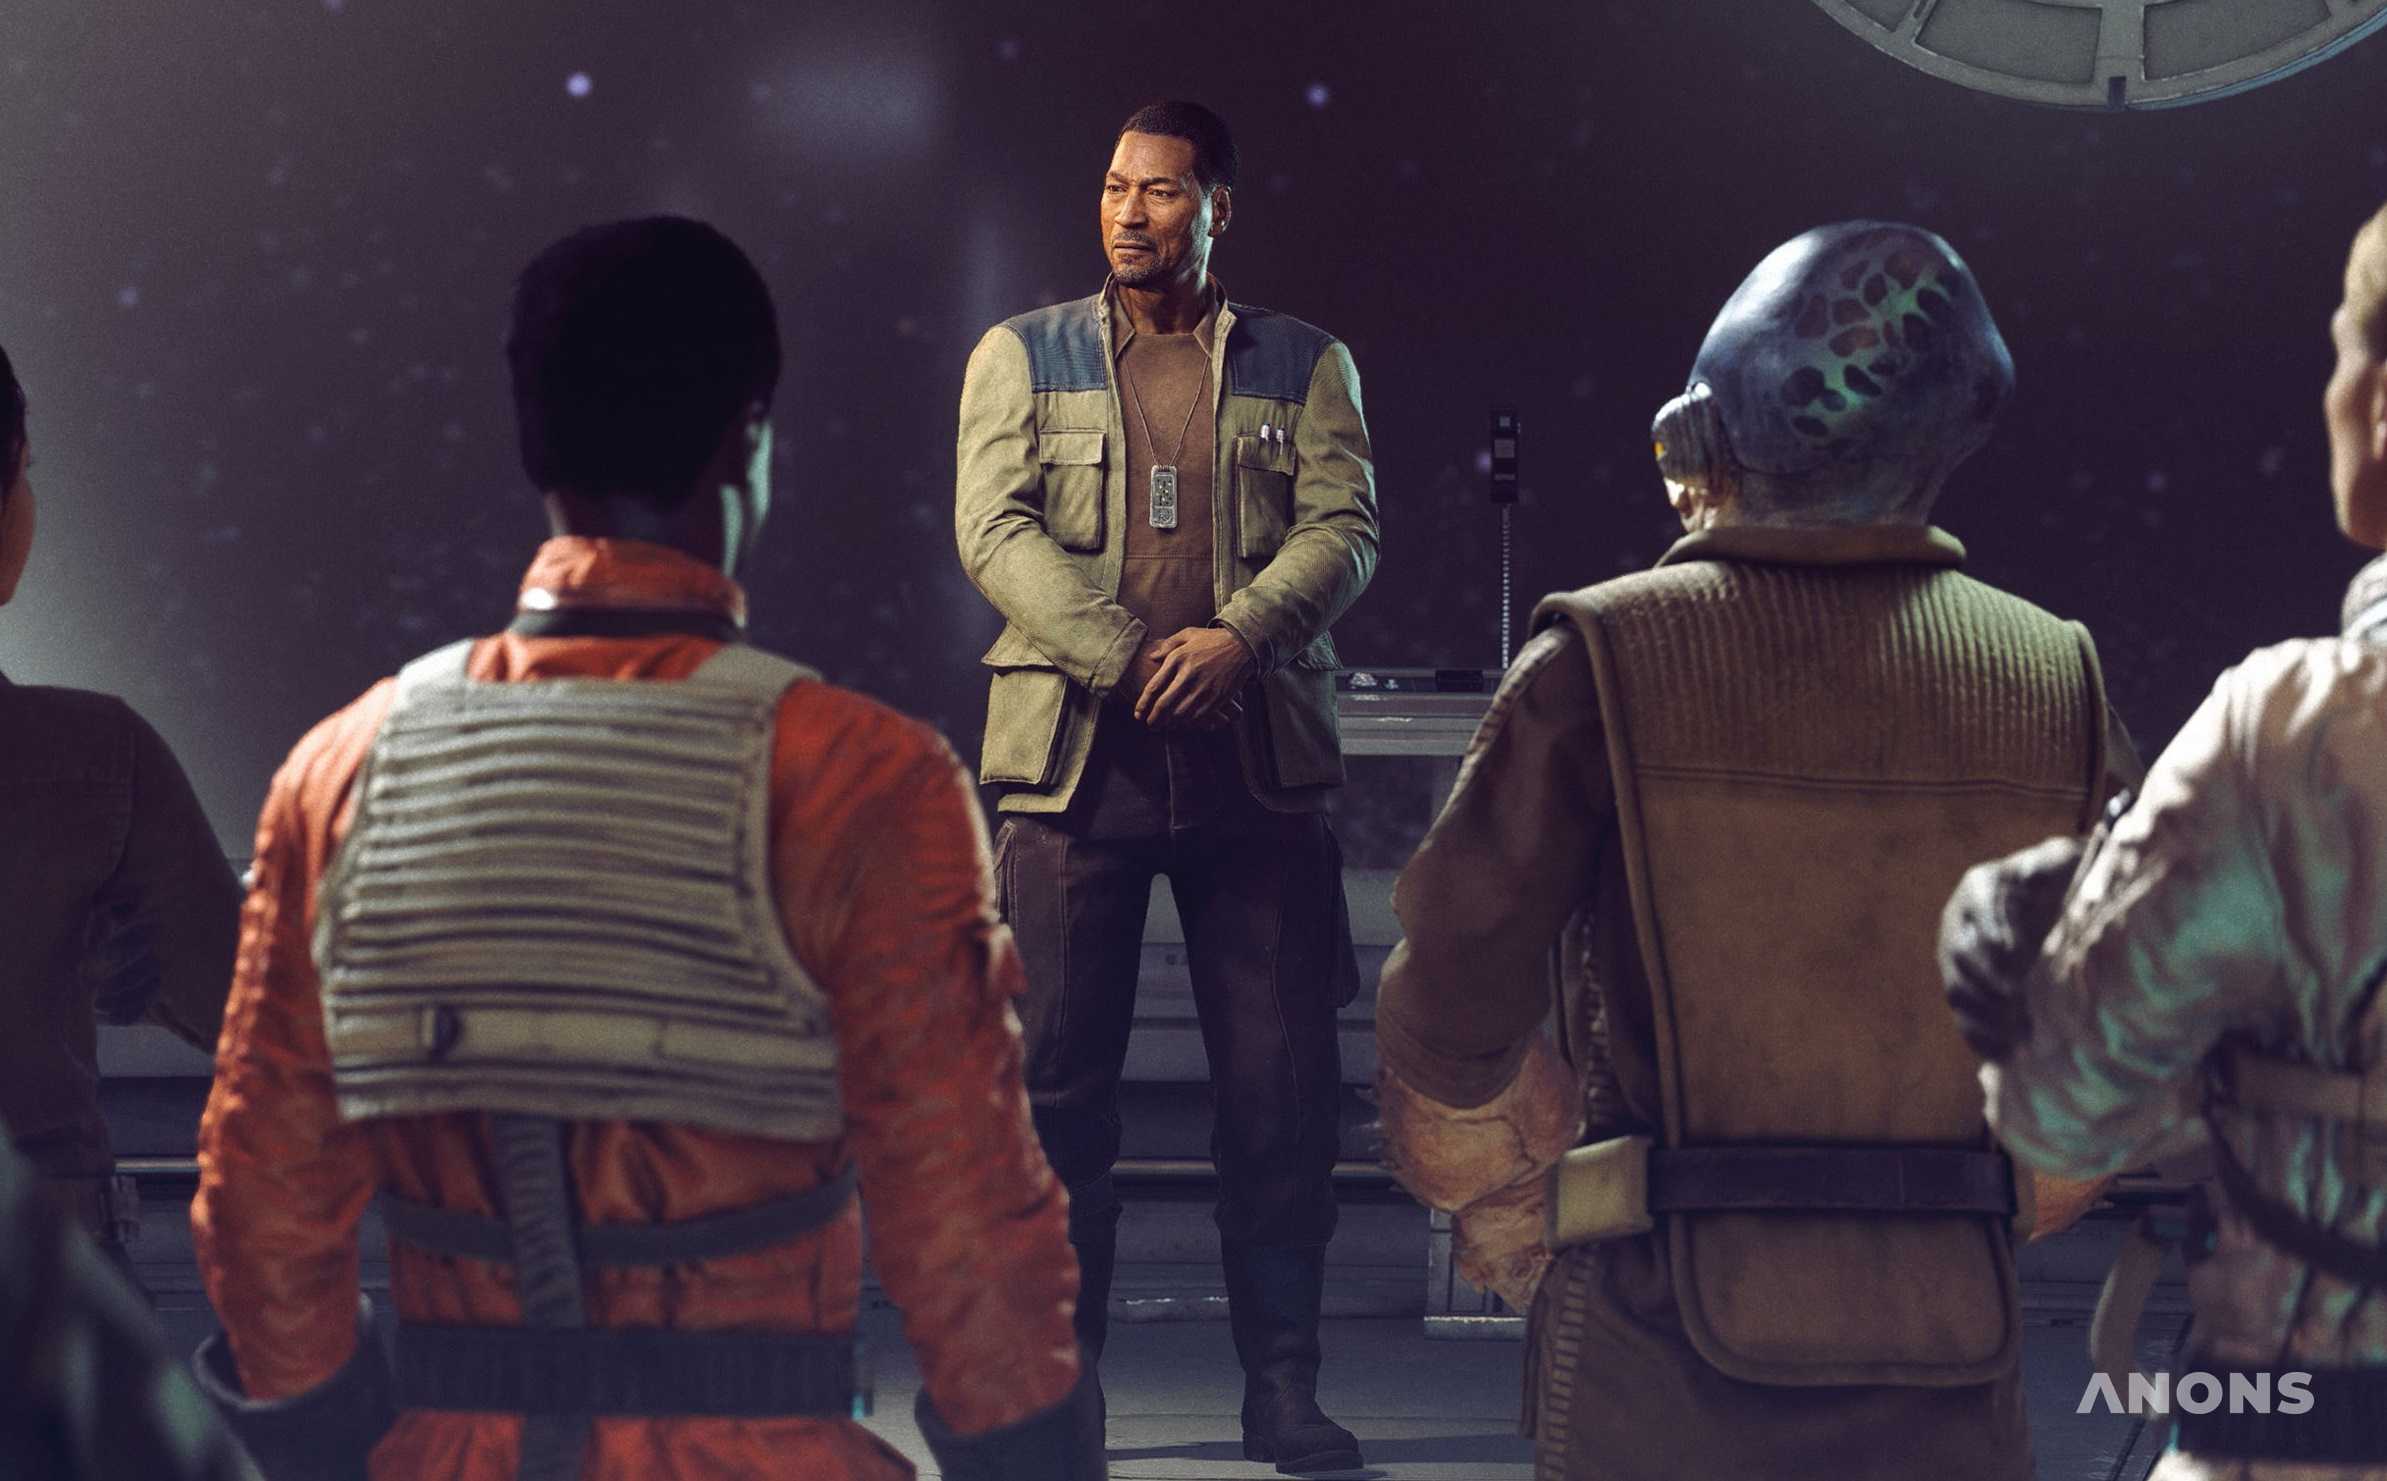 Ubisoft выпустит масштабную игру по «Звёздным войнам» с открытым миром